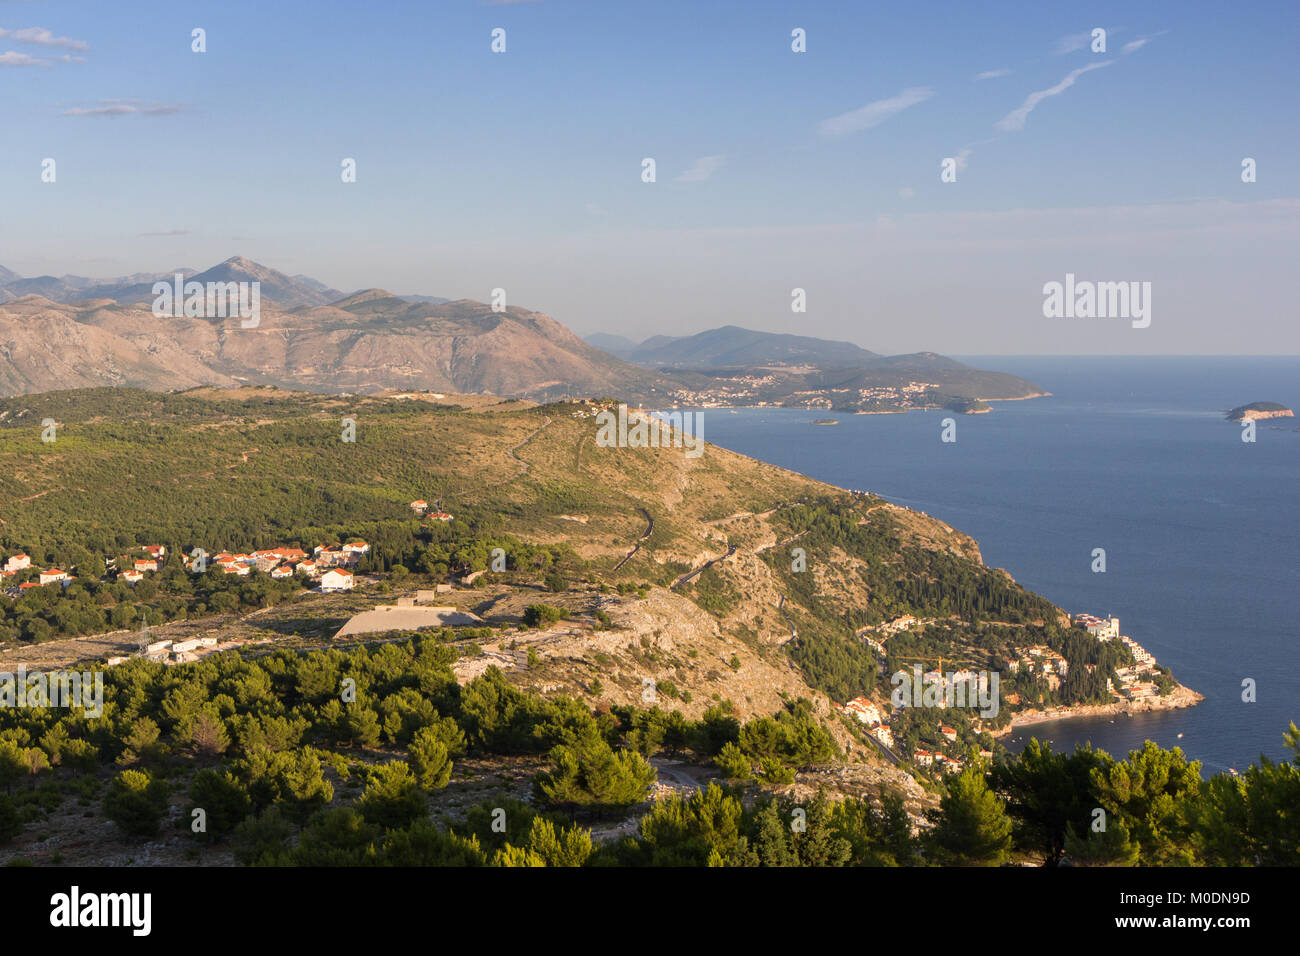 Vue panoramique sur les Alpes Dinariques et de la côte du mont Srd à Dubrovnik, Croatie, sur une journée ensoleillée. Banque D'Images